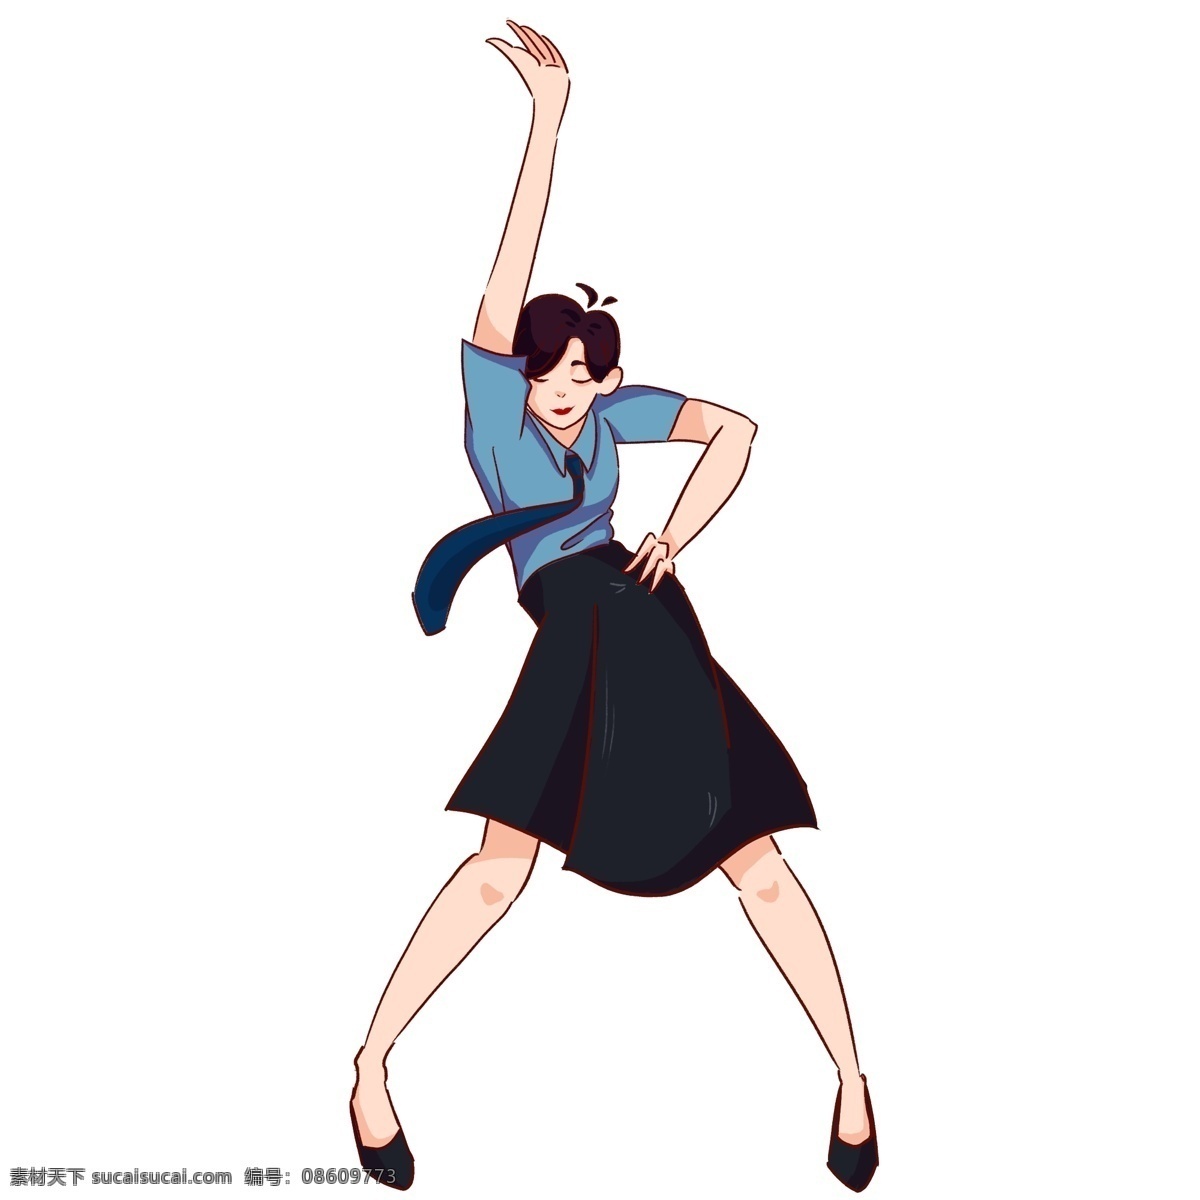 卡通 手绘 跳舞 职场 女性 插画 创意 职员 人物